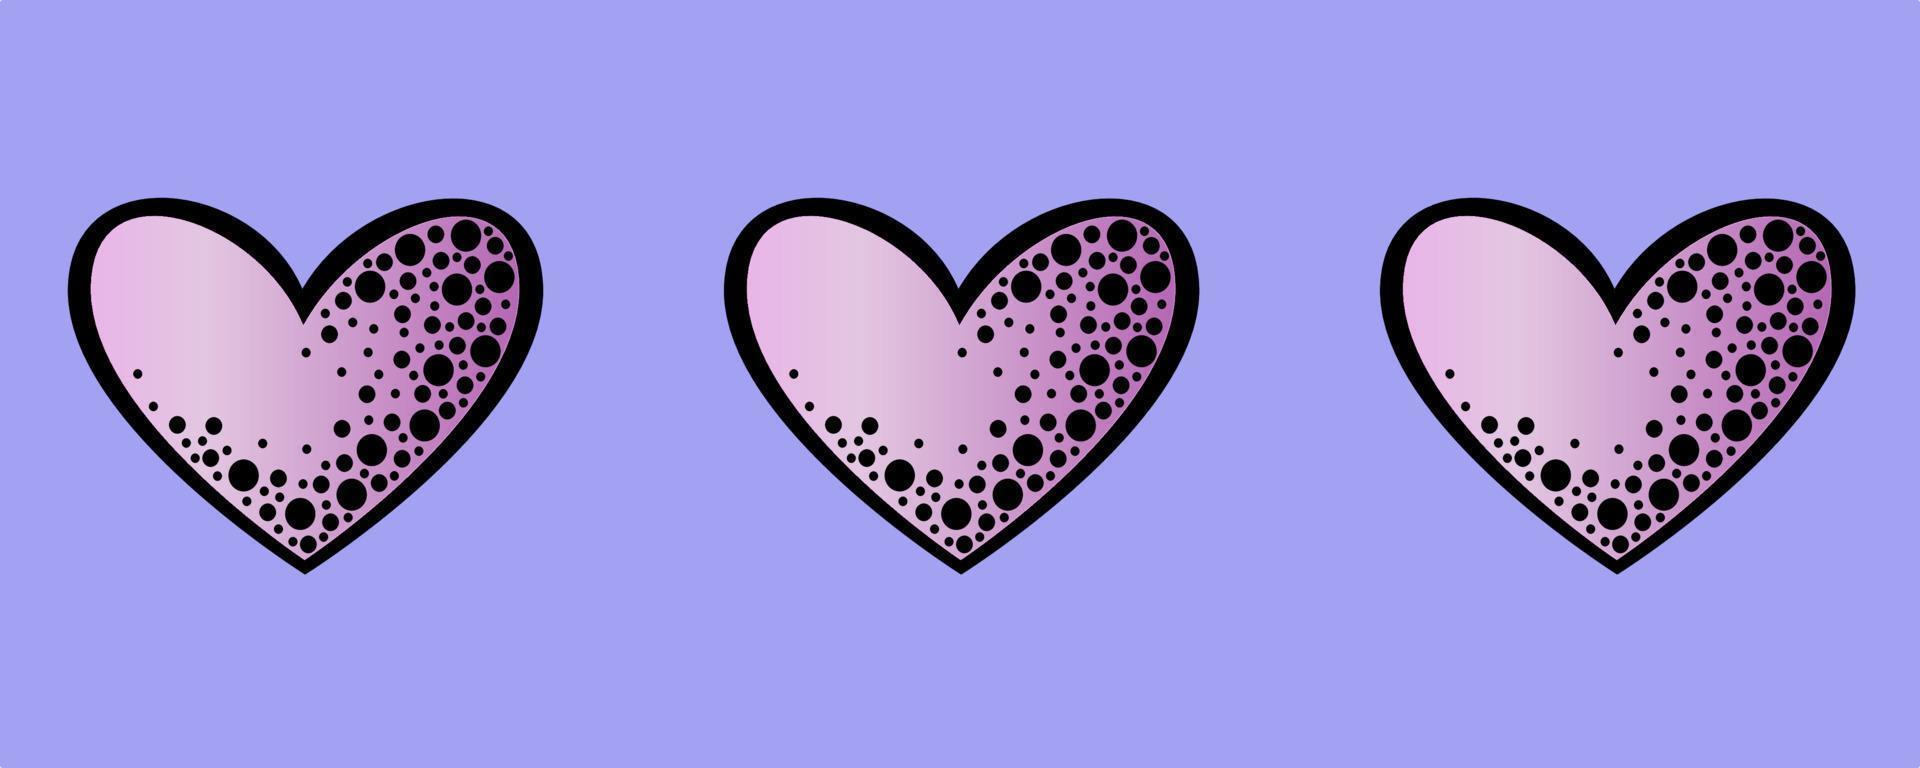 nahtlose Grenze, rosa Herzen auf einem lila Hintergrund vektor